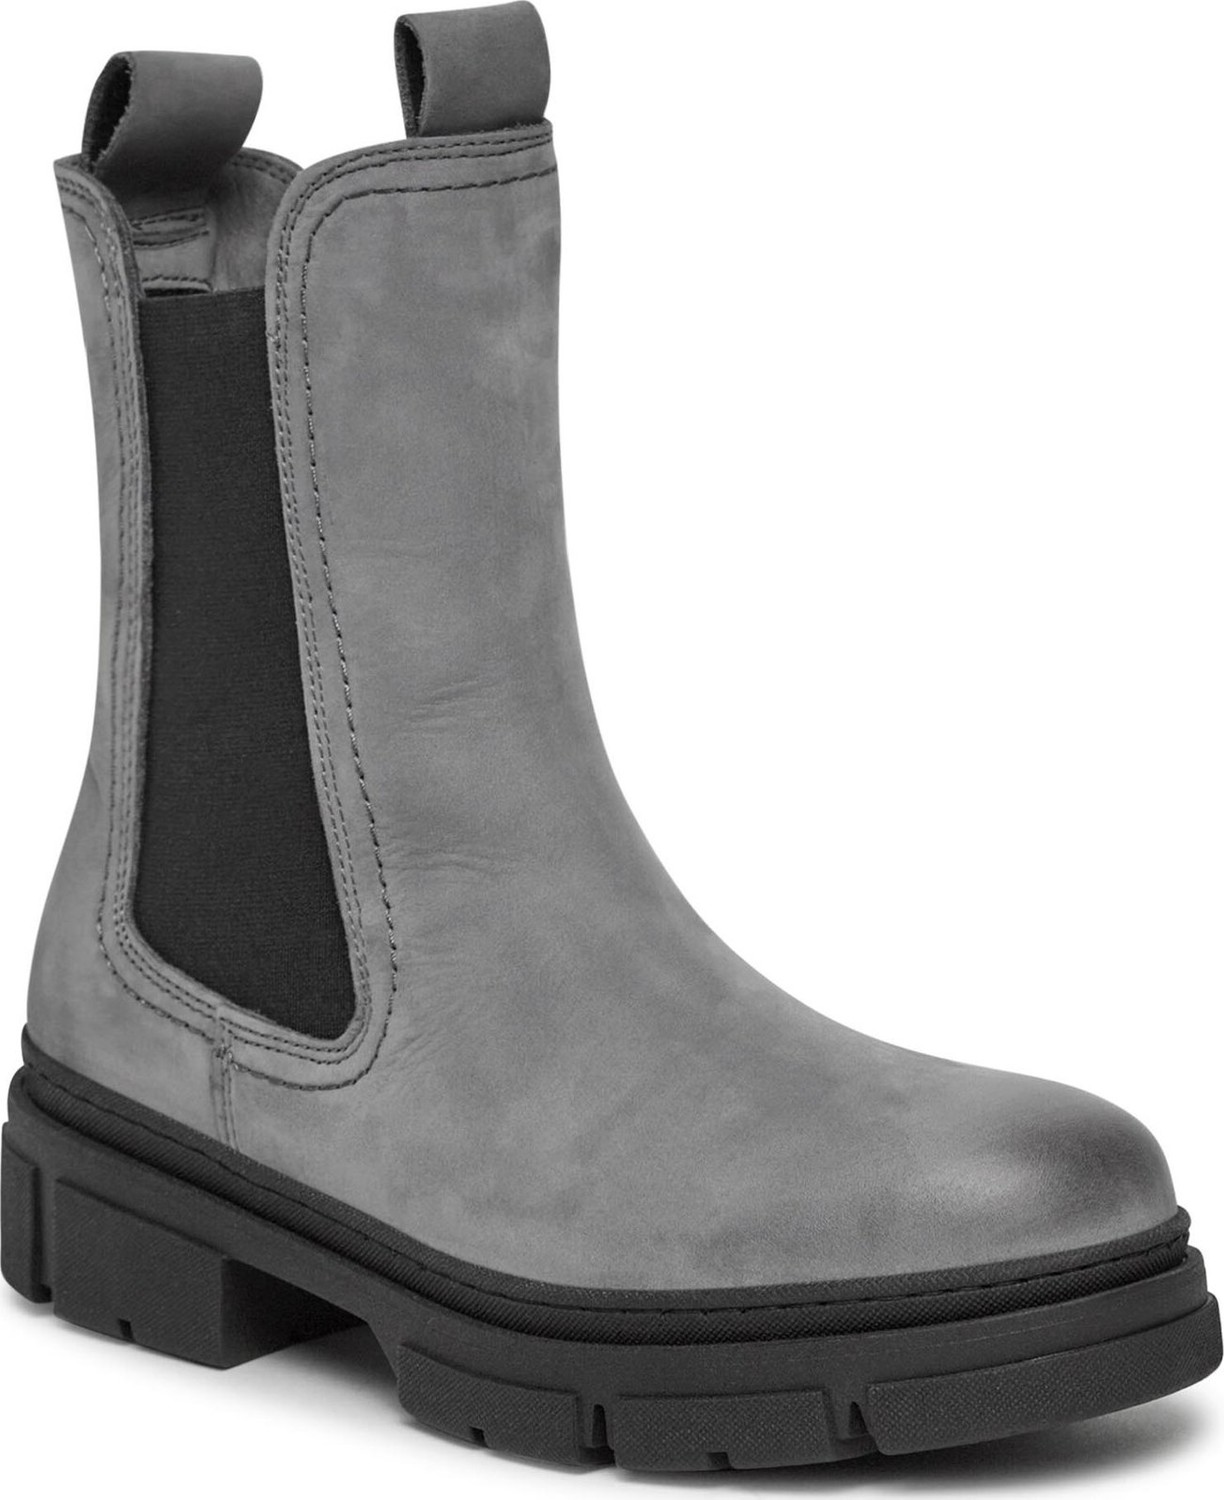 Kotníková obuv s elastickým prvkem Tamaris 1-25901-41 Grey Nubuc 217